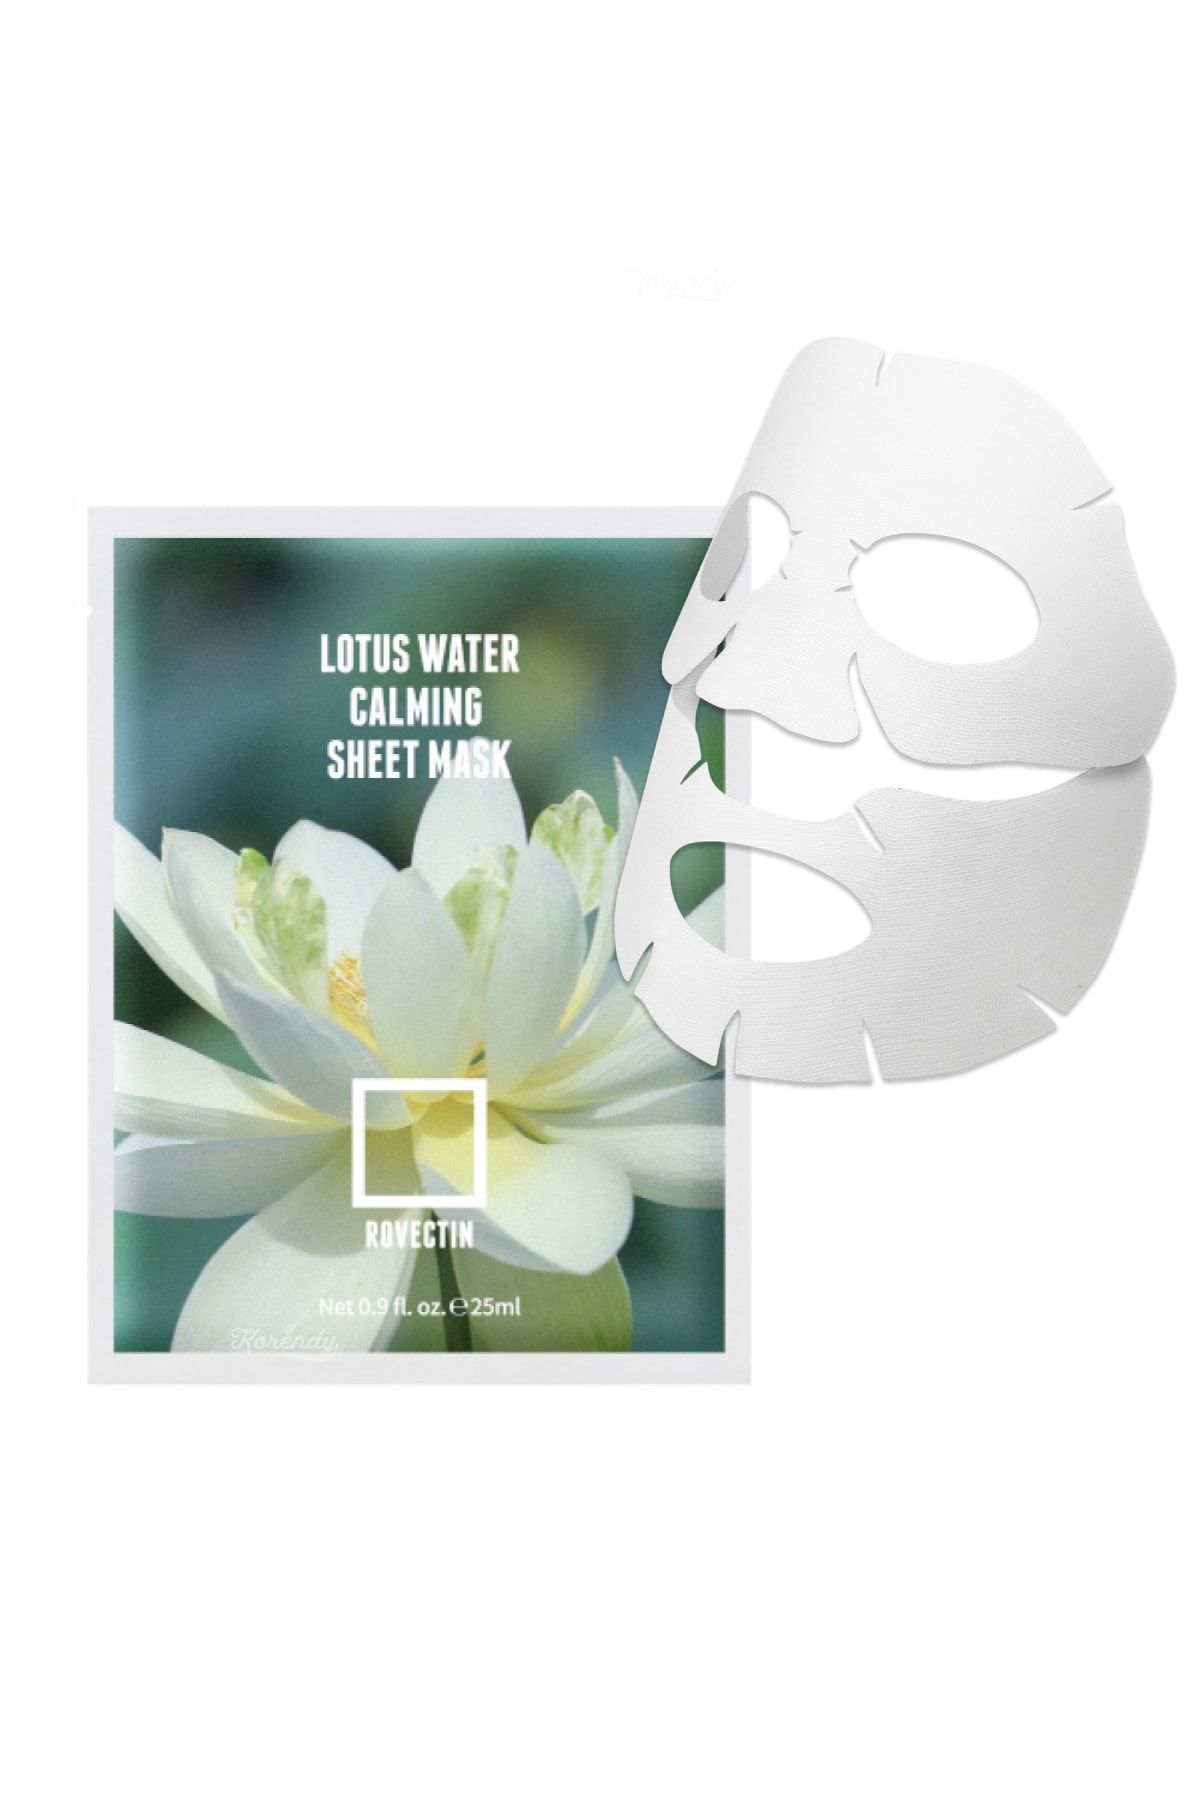 Rovectin Clean Lotus Water Calming Sheet Mask - Sakinleştirici Nem Maskesi 25ml